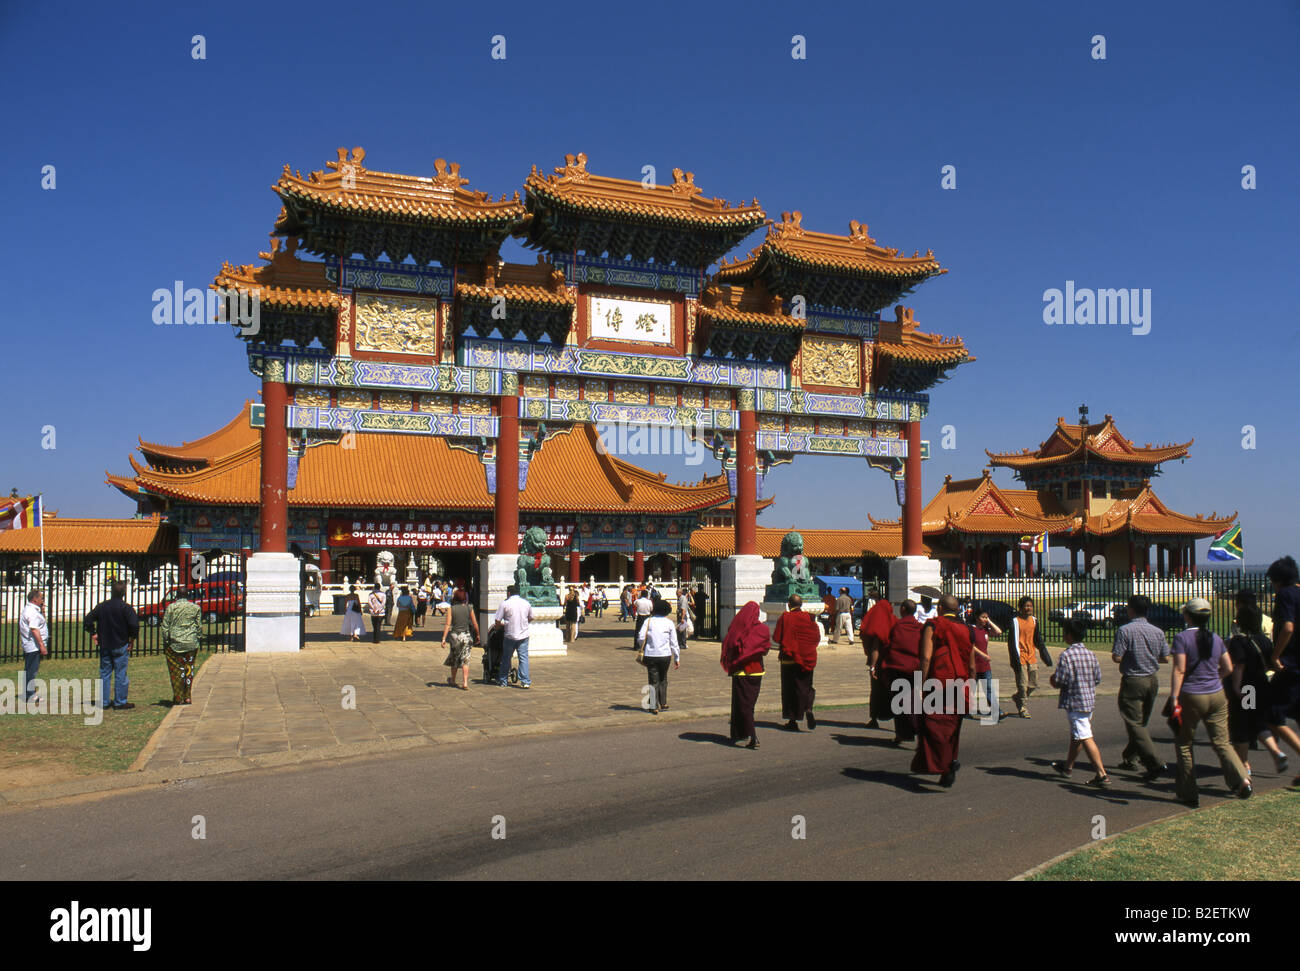 Visitors and pilgrims at Nan Hua Temple Stock Photo